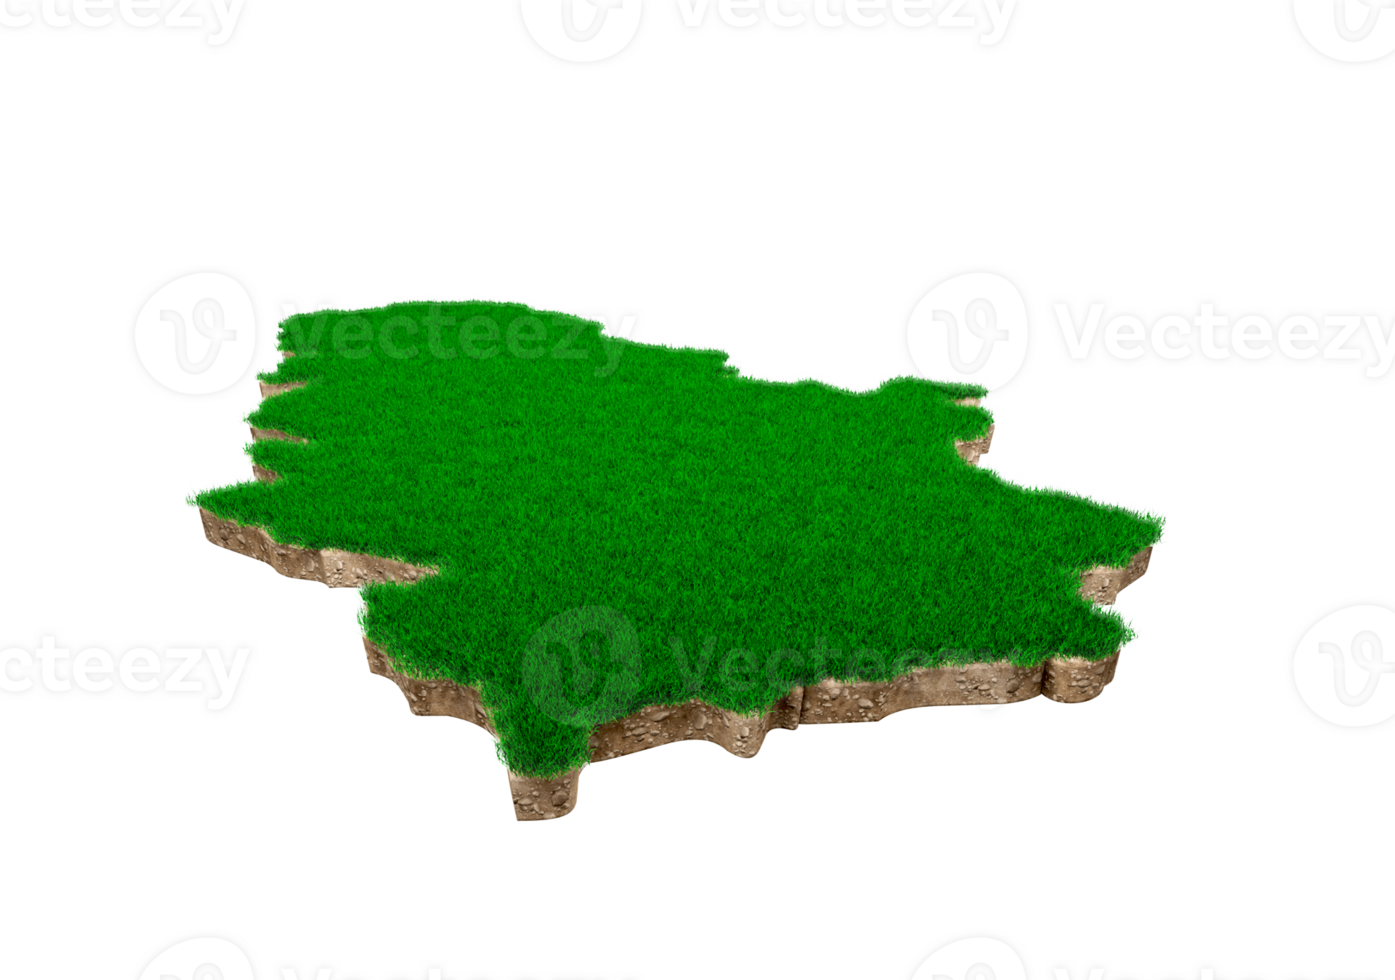 carte de la serbie coupe transversale de la géologie des sols avec de l'herbe verte et de la texture du sol rocheux illustration 3d png